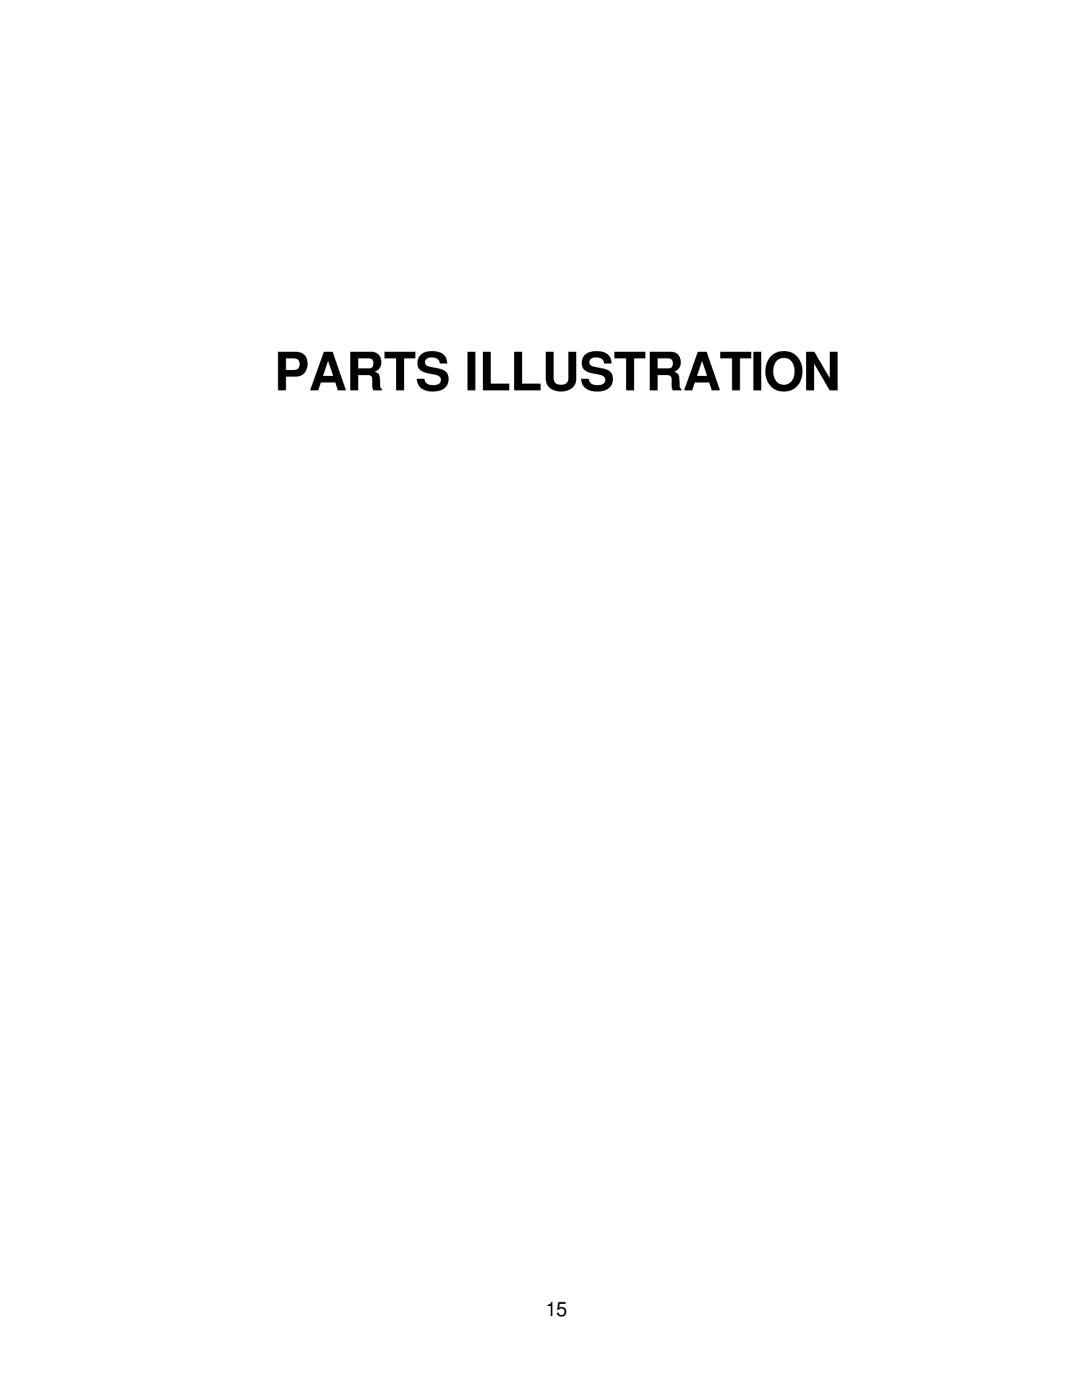 Yazoo/Kees Z9A manual Parts Illustration 